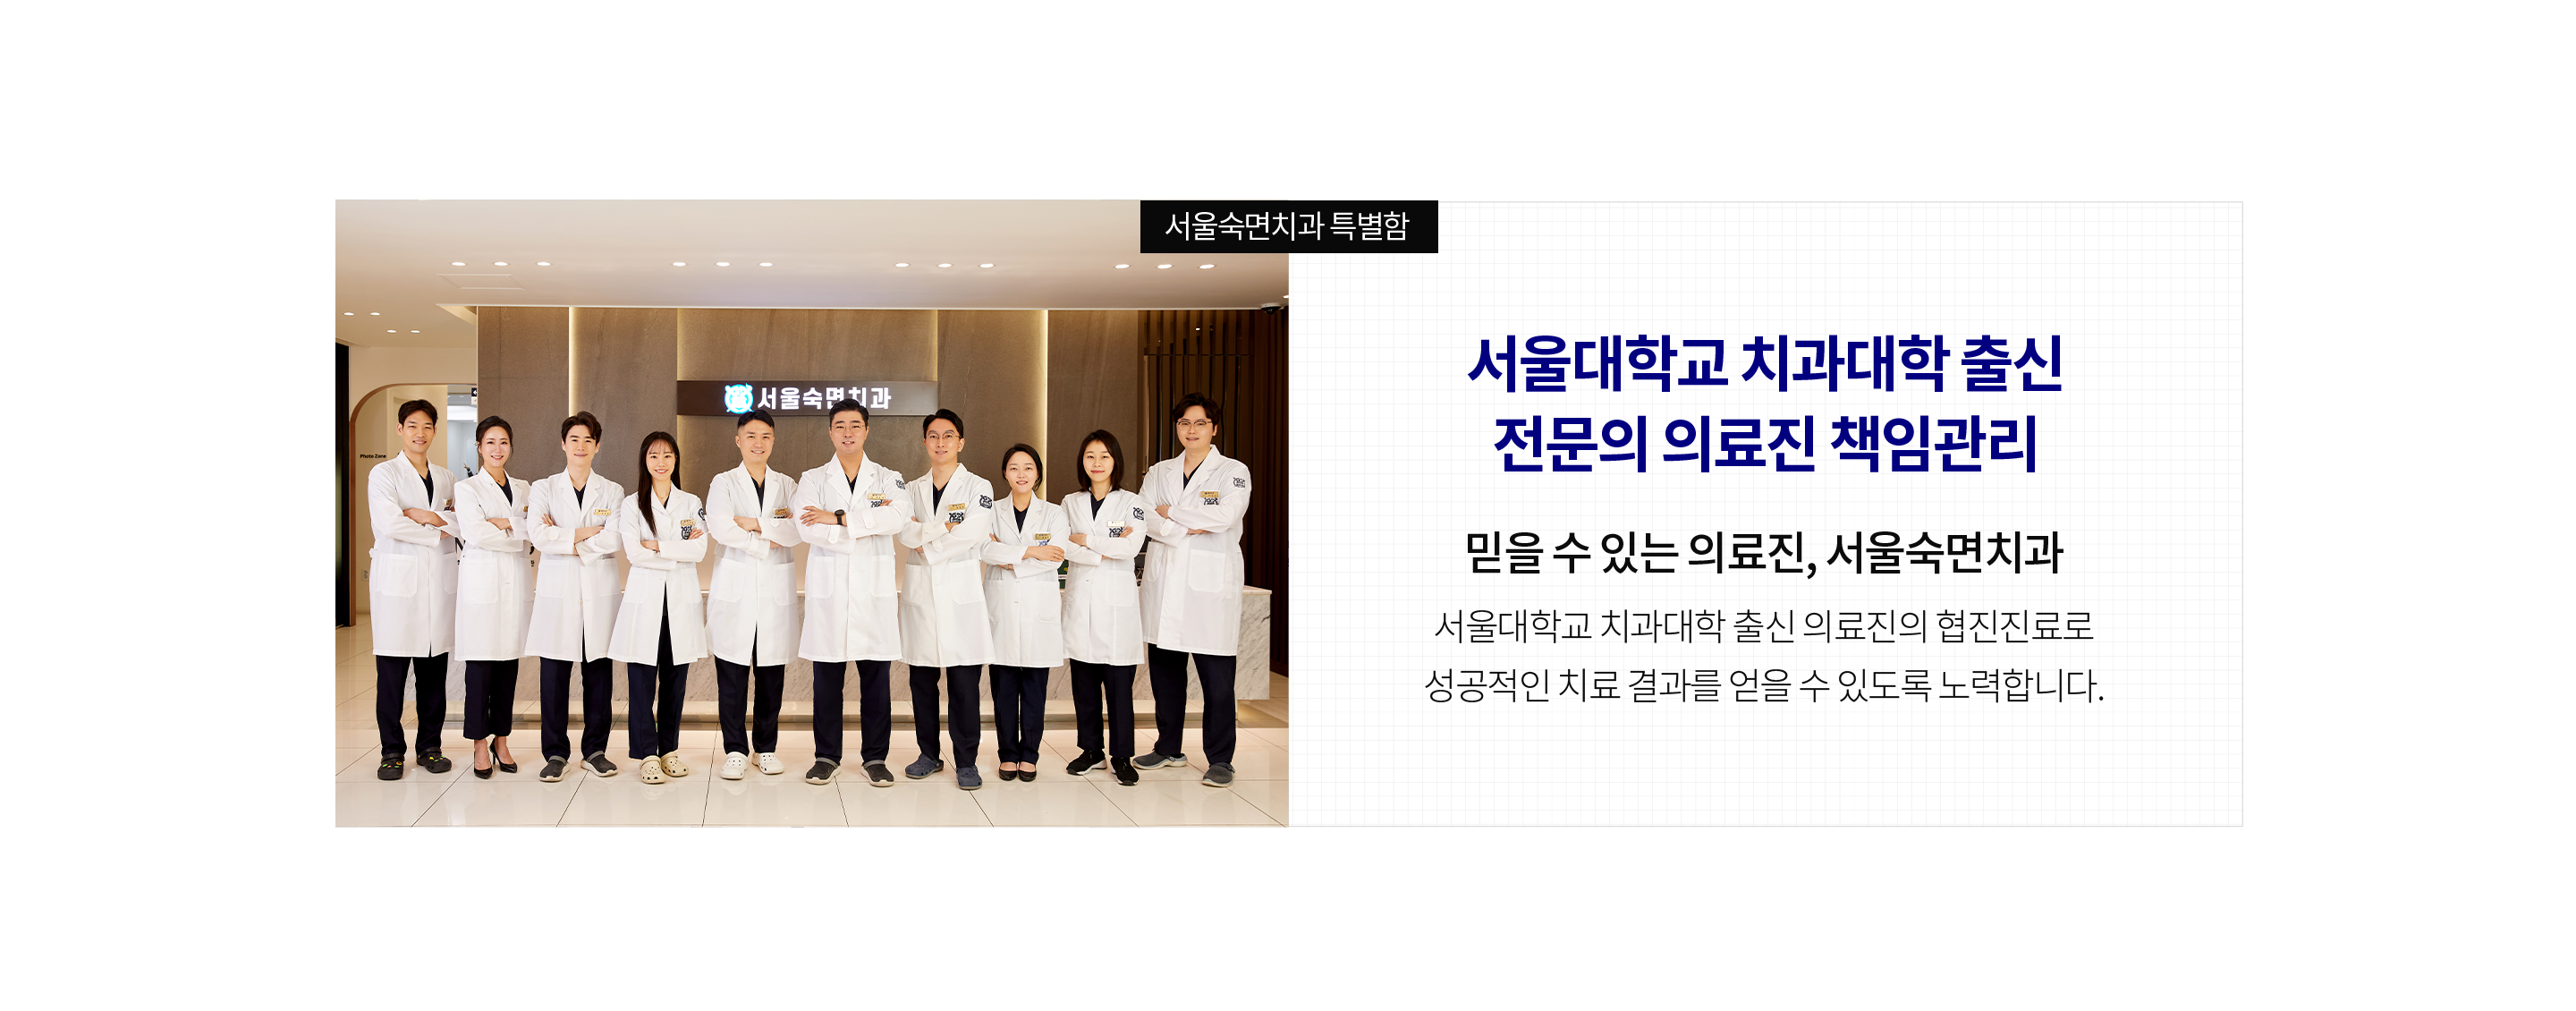 서울대학교-치과대학-출신-전문의-의료진-책임관리-믿을-수-있는-의료진-서울더퍼스트치과-서울대학교-치과대학-출신-의료진의-협진-진료로-성공적인-치료-결과를-얻을-수-있도록-노력합니다